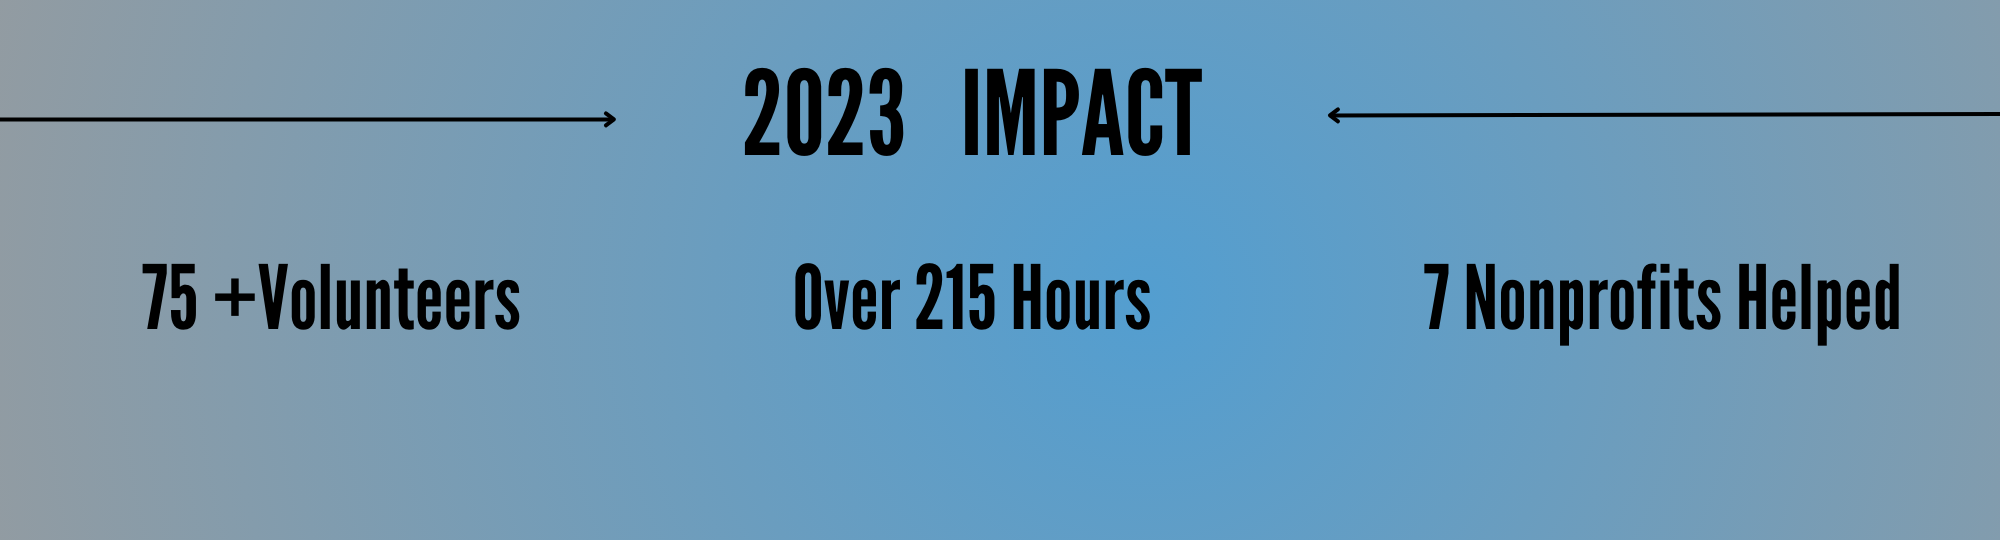 Volunteer Impact 2023